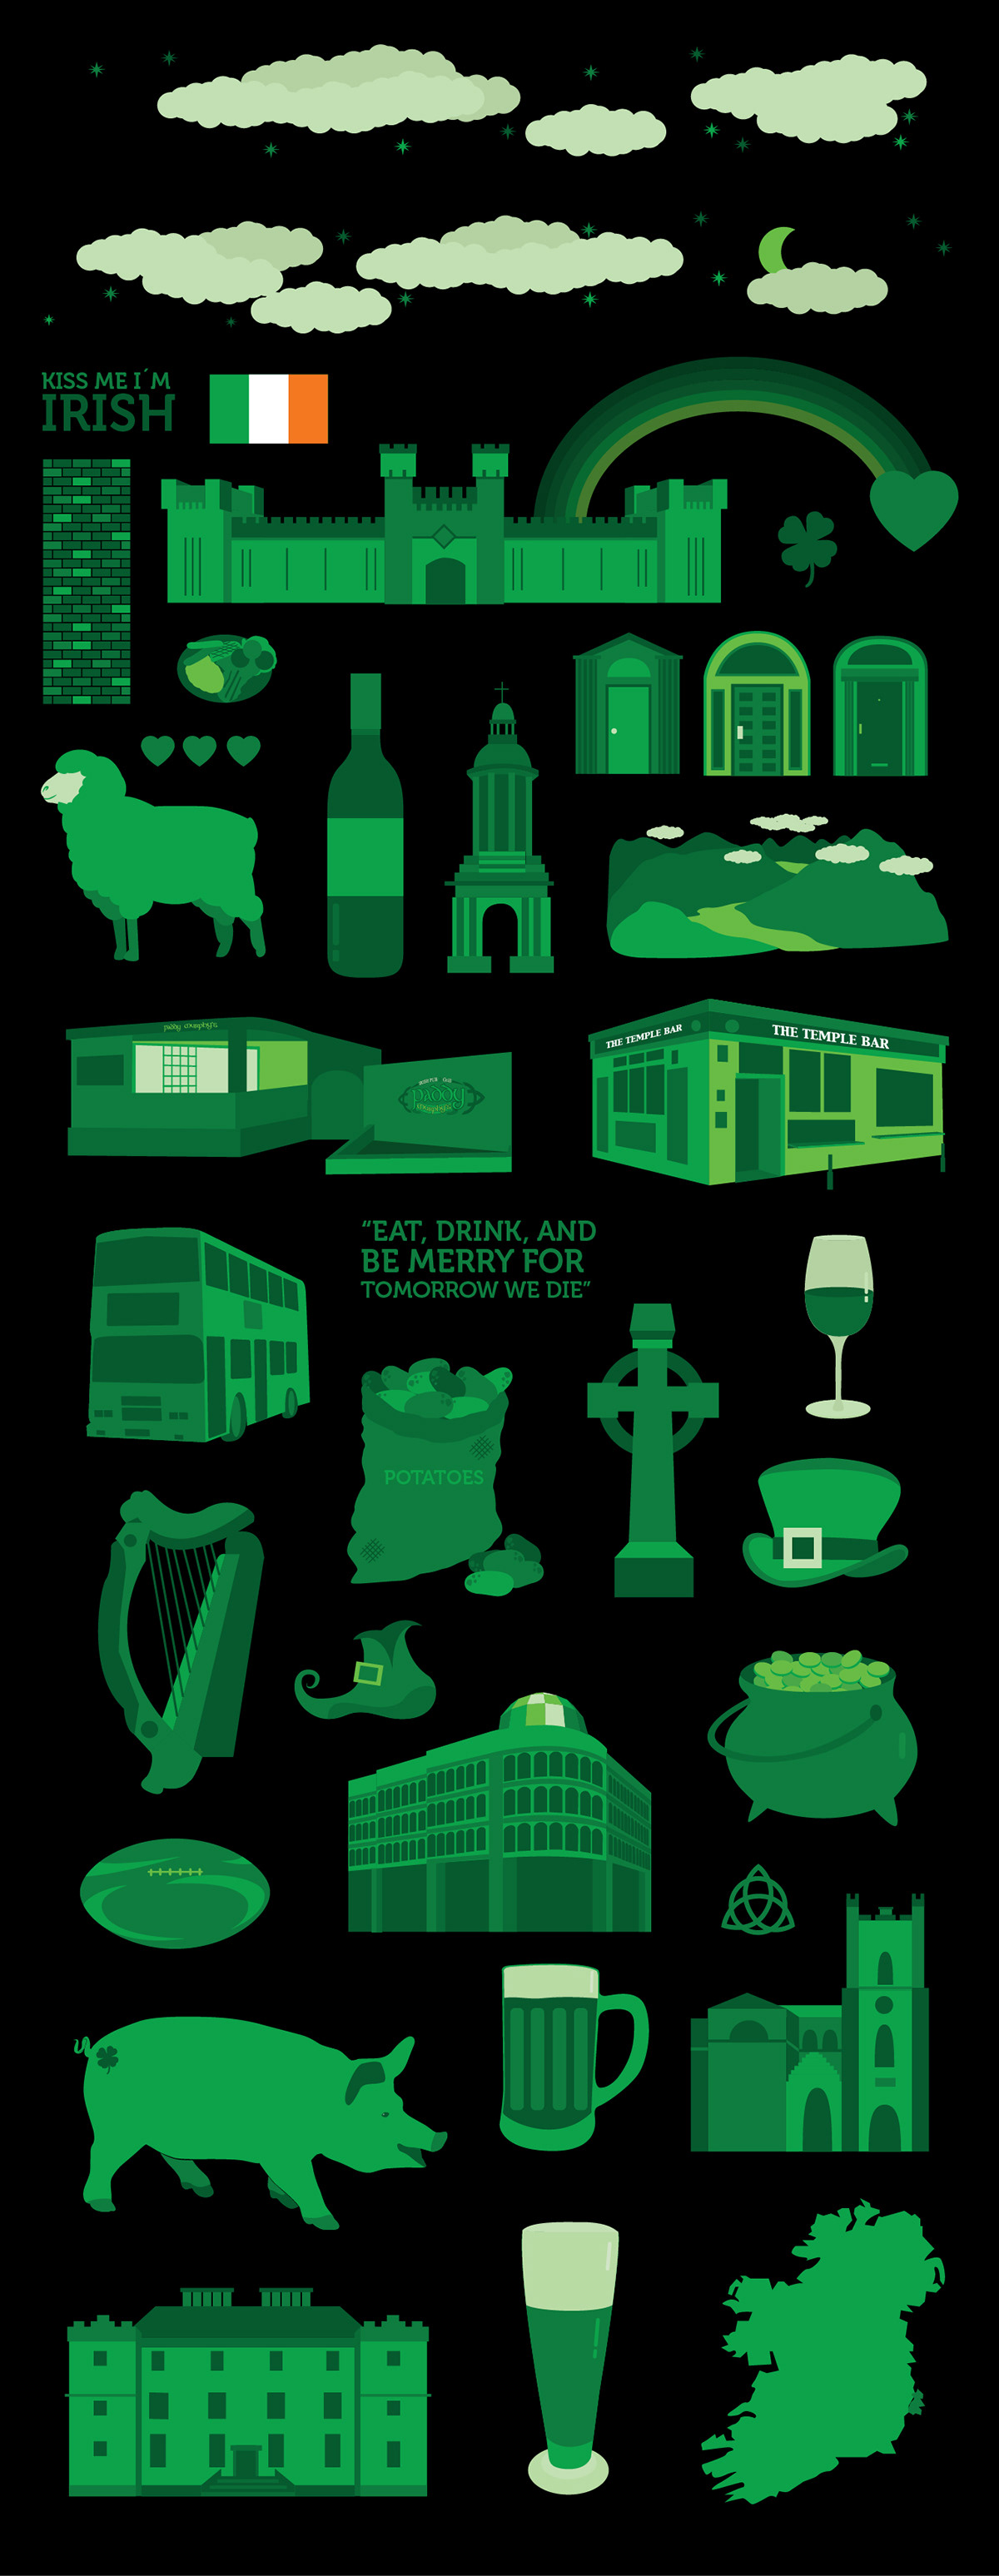 Paddy Murphy's paddy's paddy Murphy's Iconografia Irlanda Ireland diego gamboa pub irish irish pub green